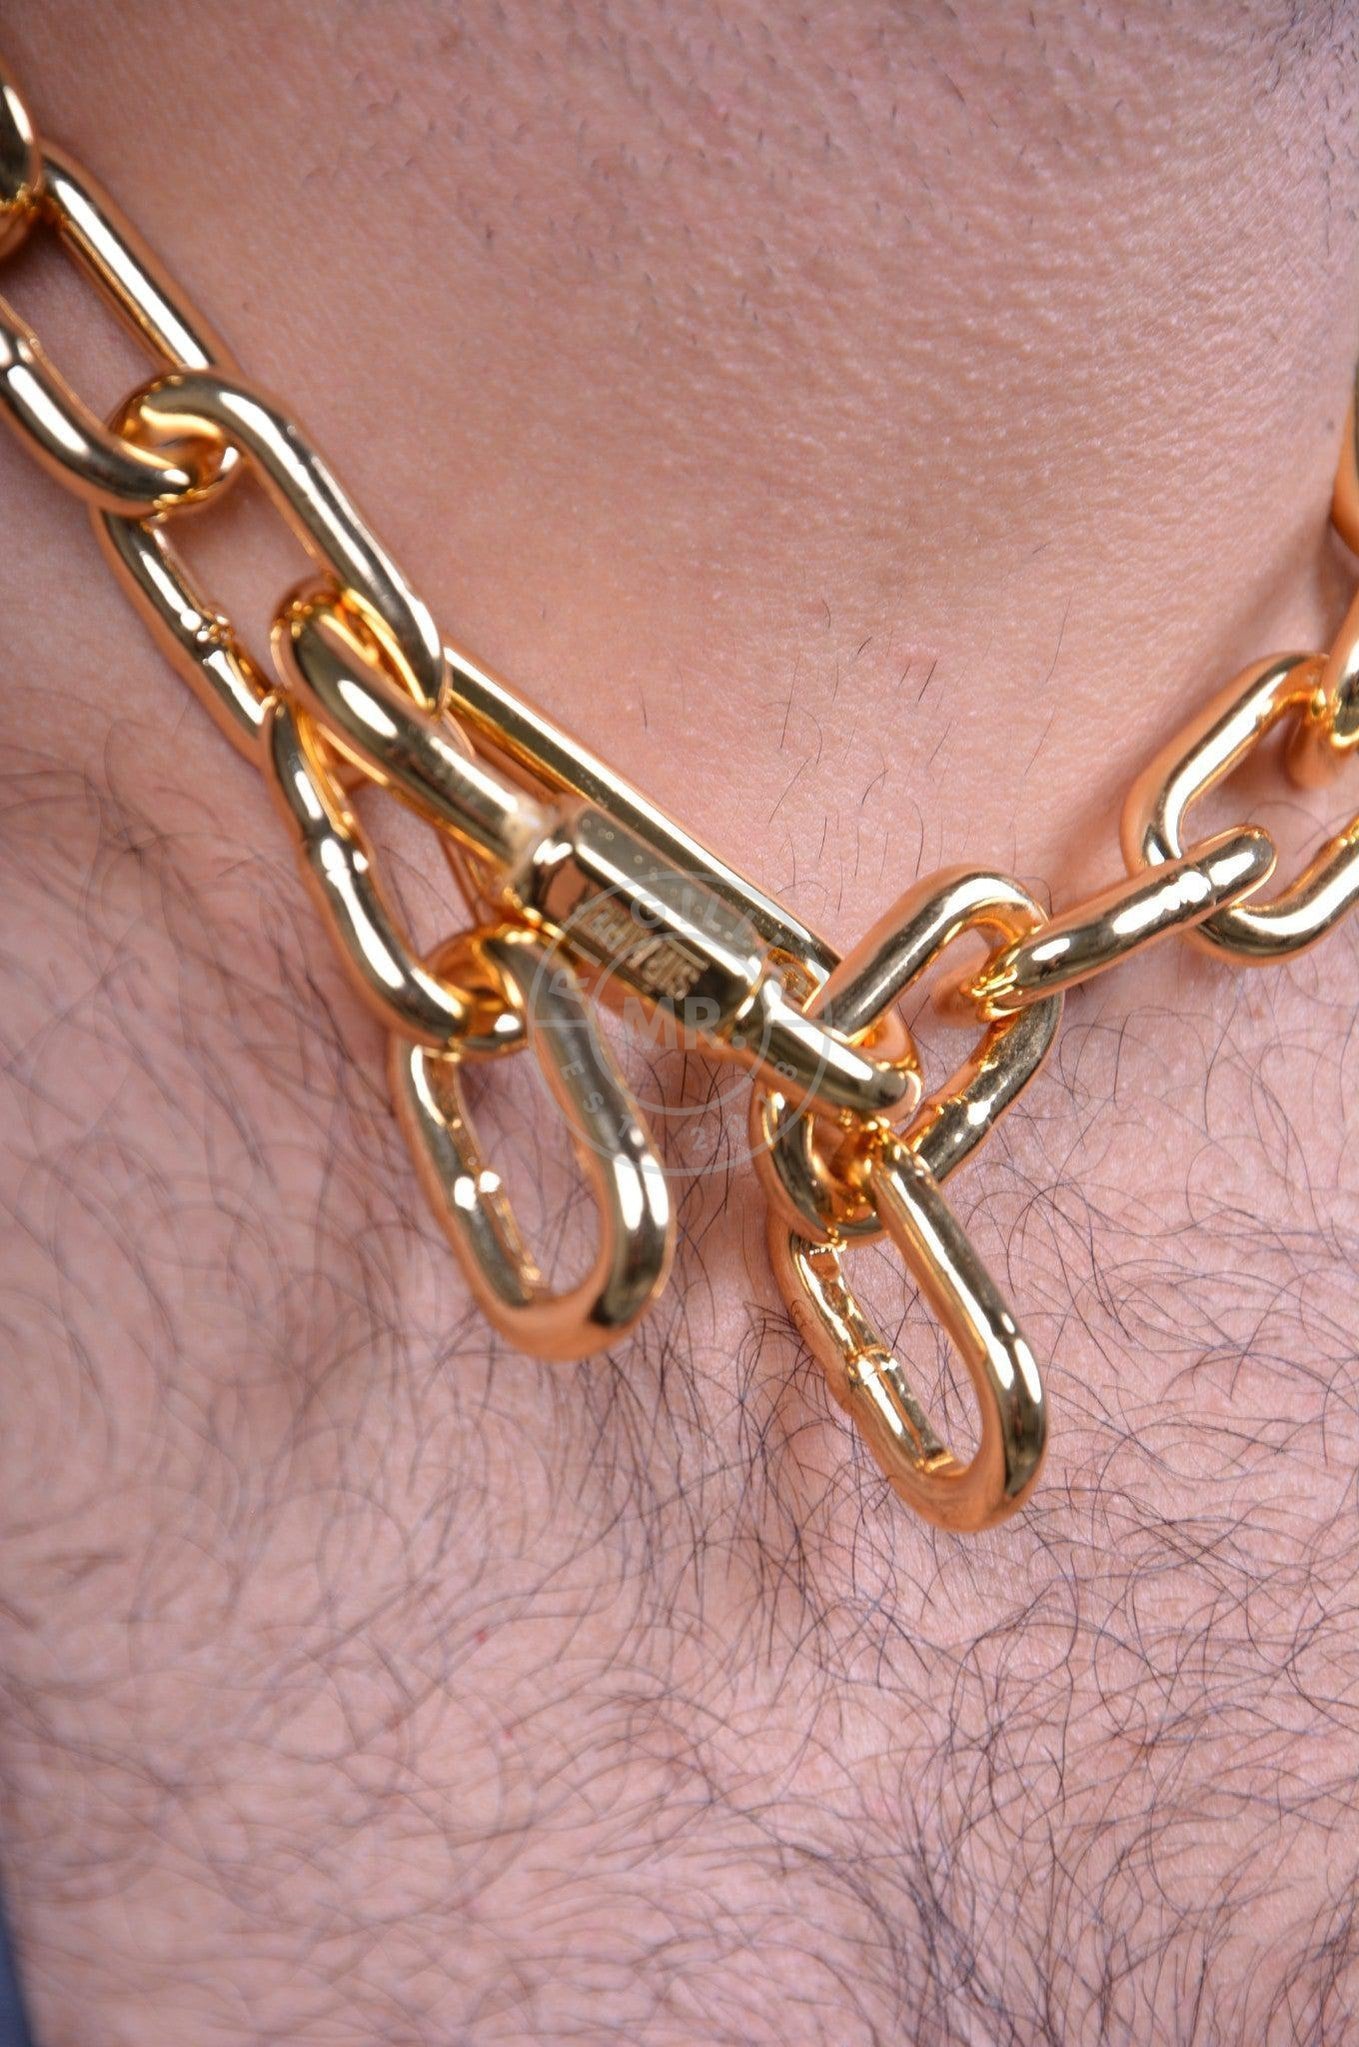 Chain Collar - Gold-at MR. Riegillio